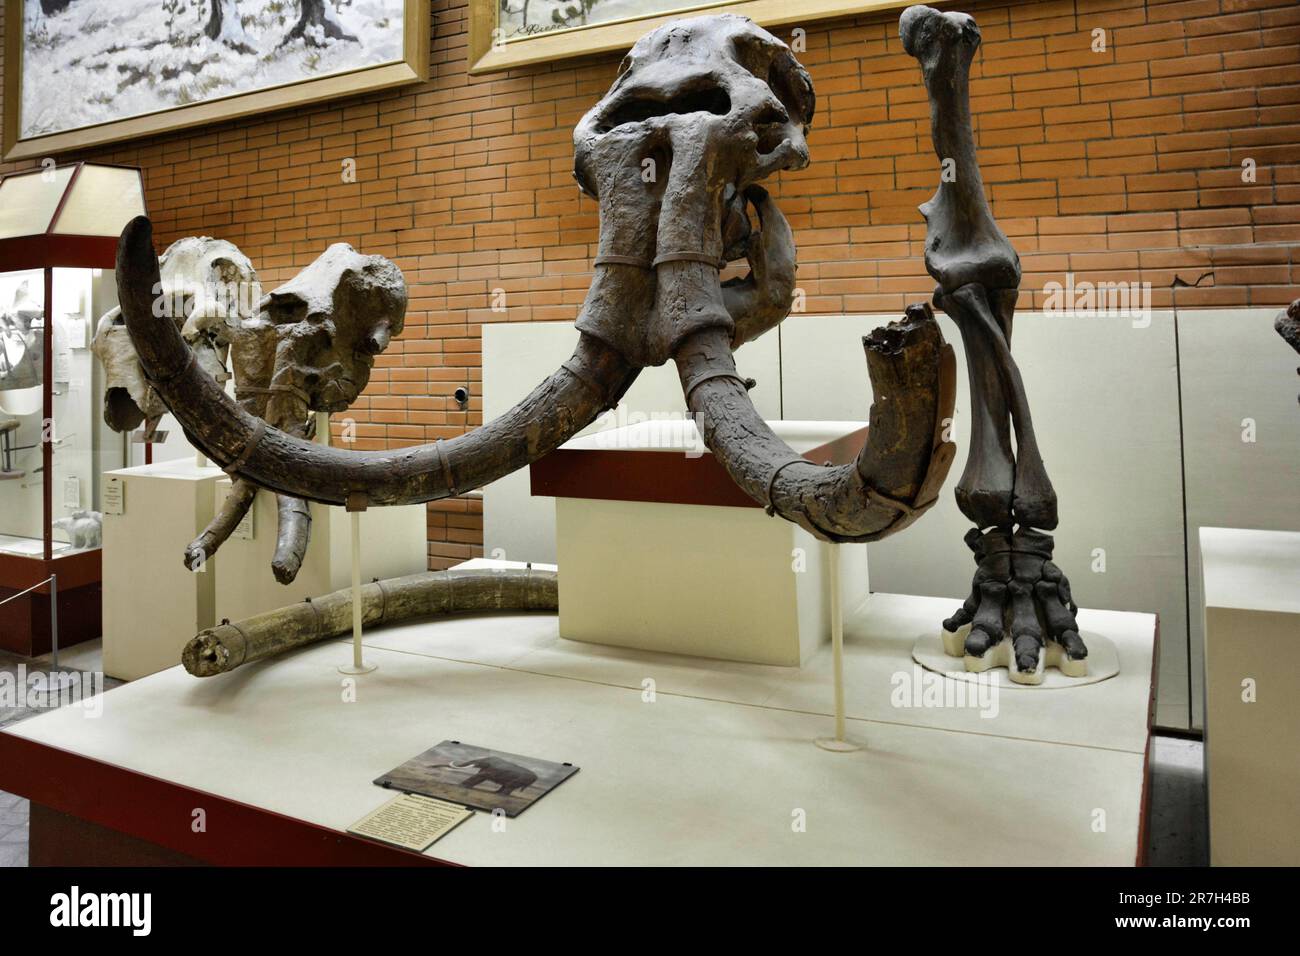 Der Mastodon (Mammoth) war ein primitiver Proboscidean, der vor 4 Millionen bis 10.000 Jahren im Pliozän und Pleistozän lebte Stockfoto